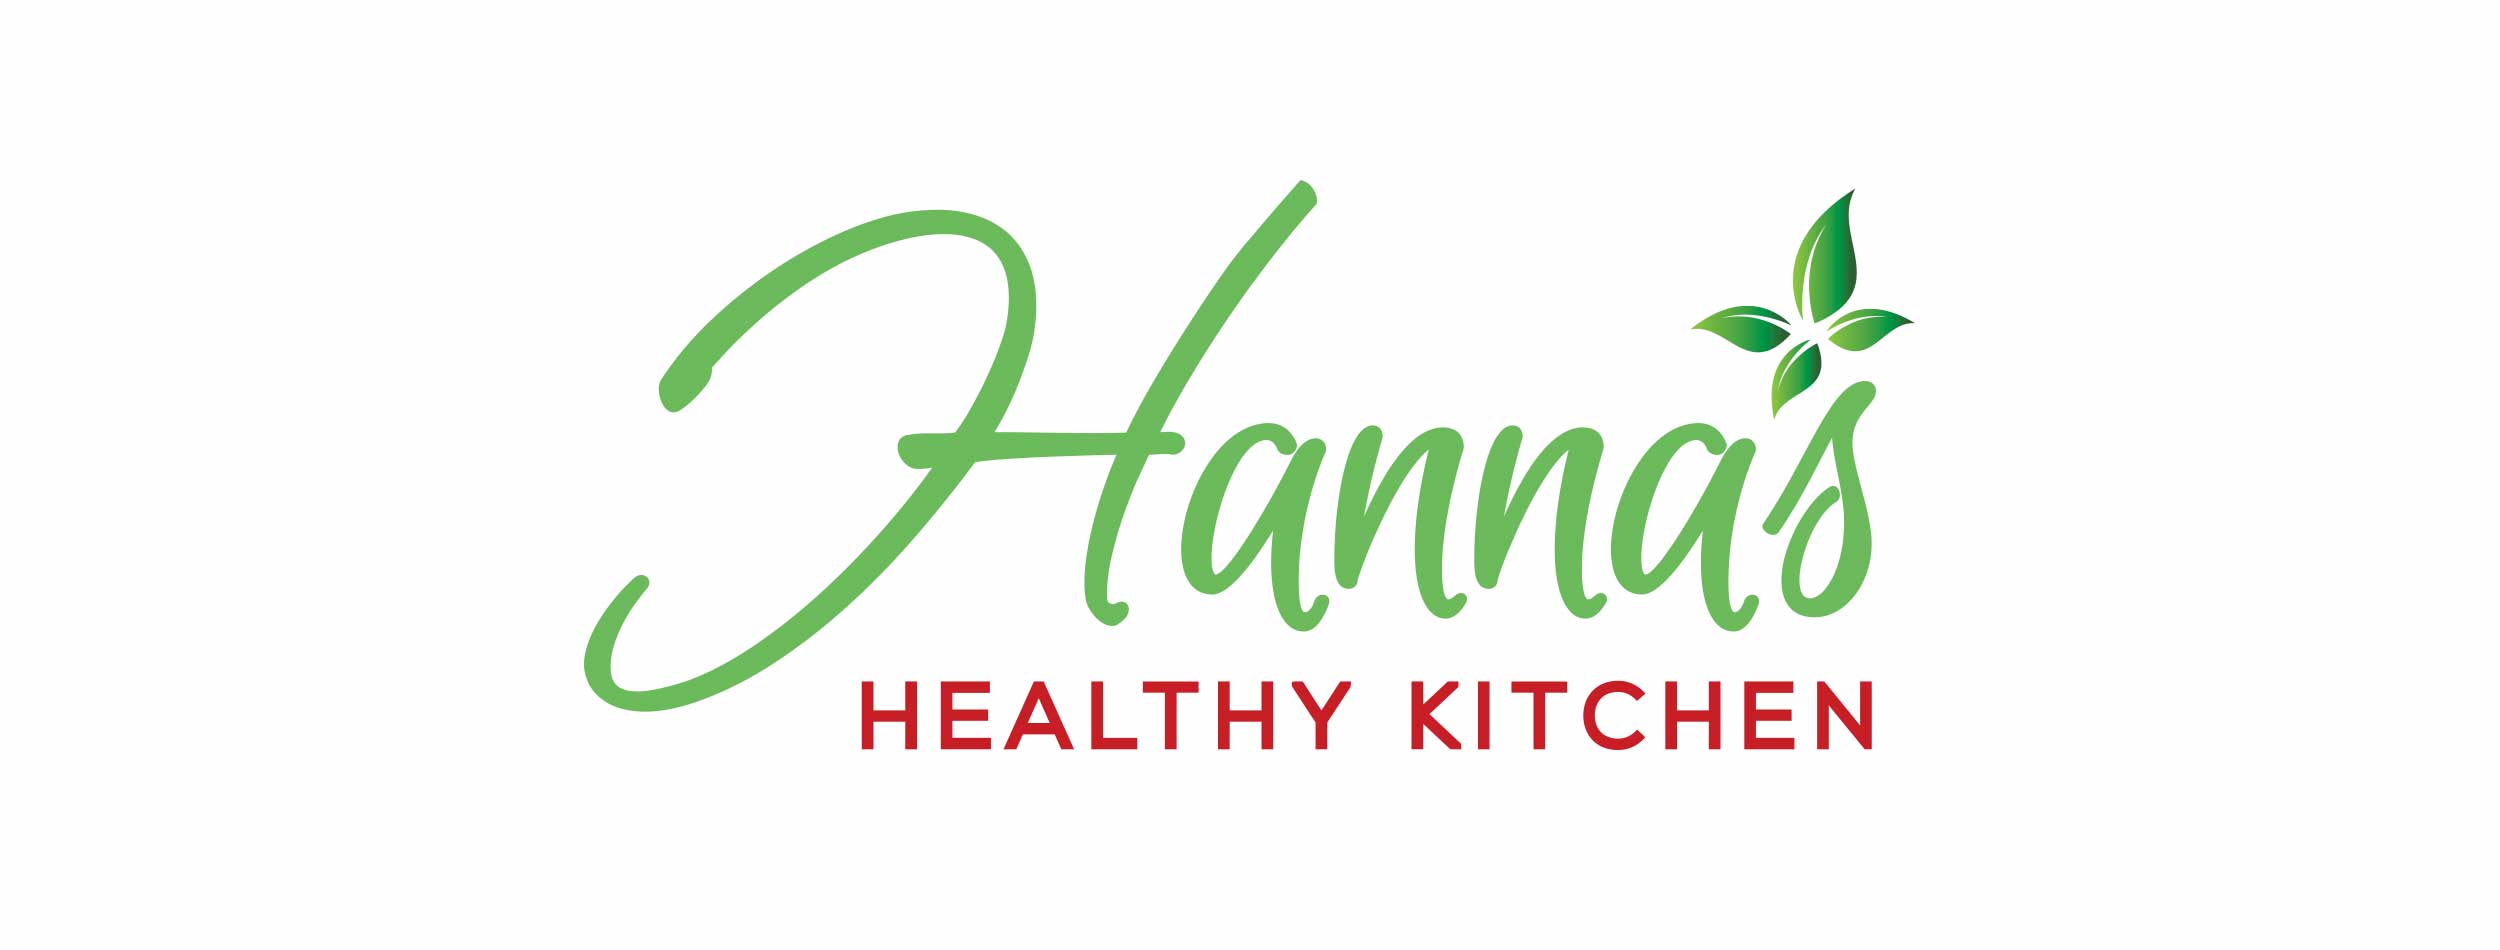 Hannas Healthy Kitchen Logo Design for Print